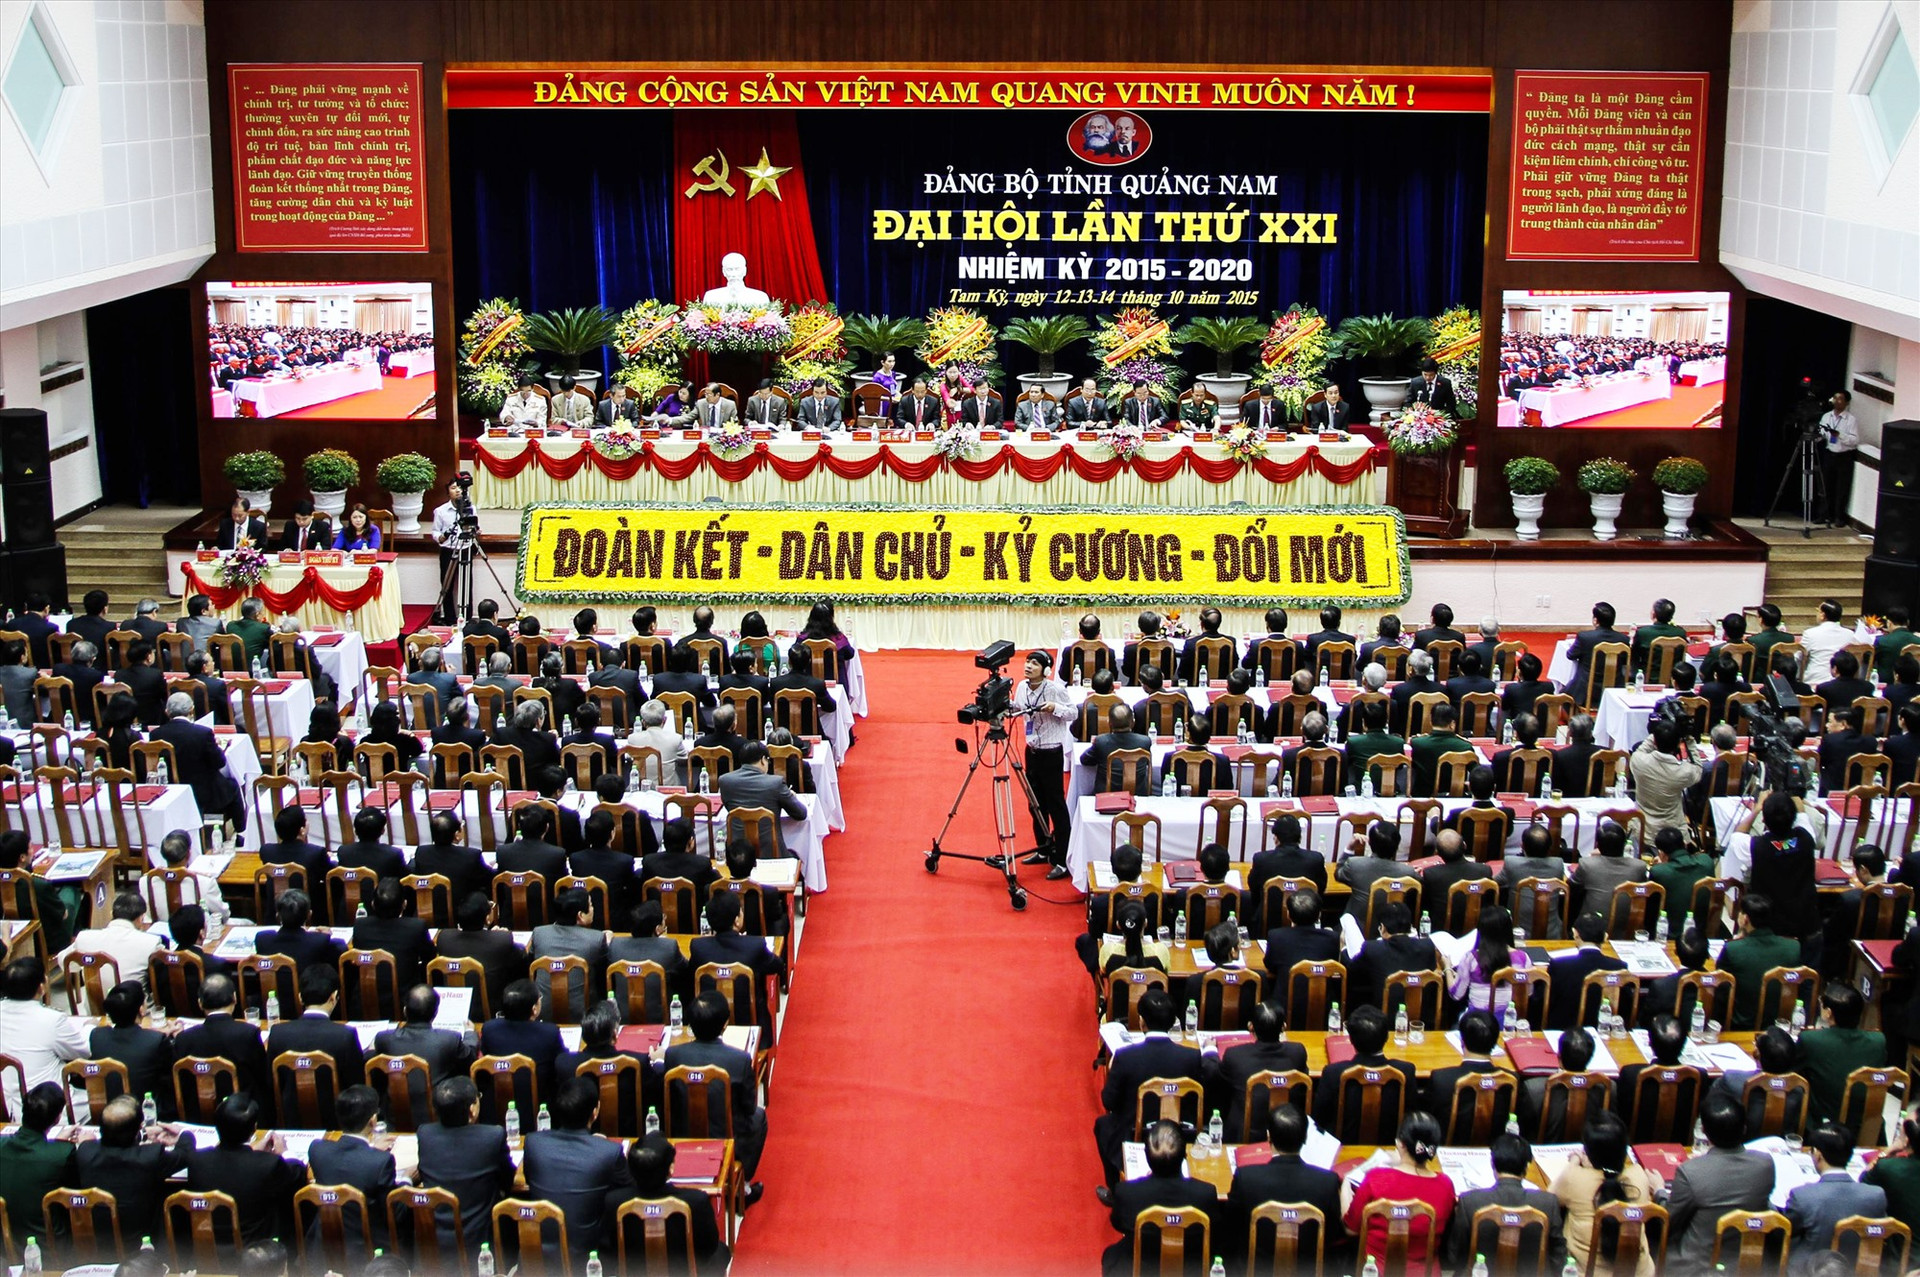 Từ một tổ chức đảng với hơn 80 đảng viên, đến nay Đảng bộ Quảng Nam có 68.882 đảng viên đang sinh hoạt tại 3.202 chi bộ trực thuộc 1.152 tổ chức cơ sở đảng.